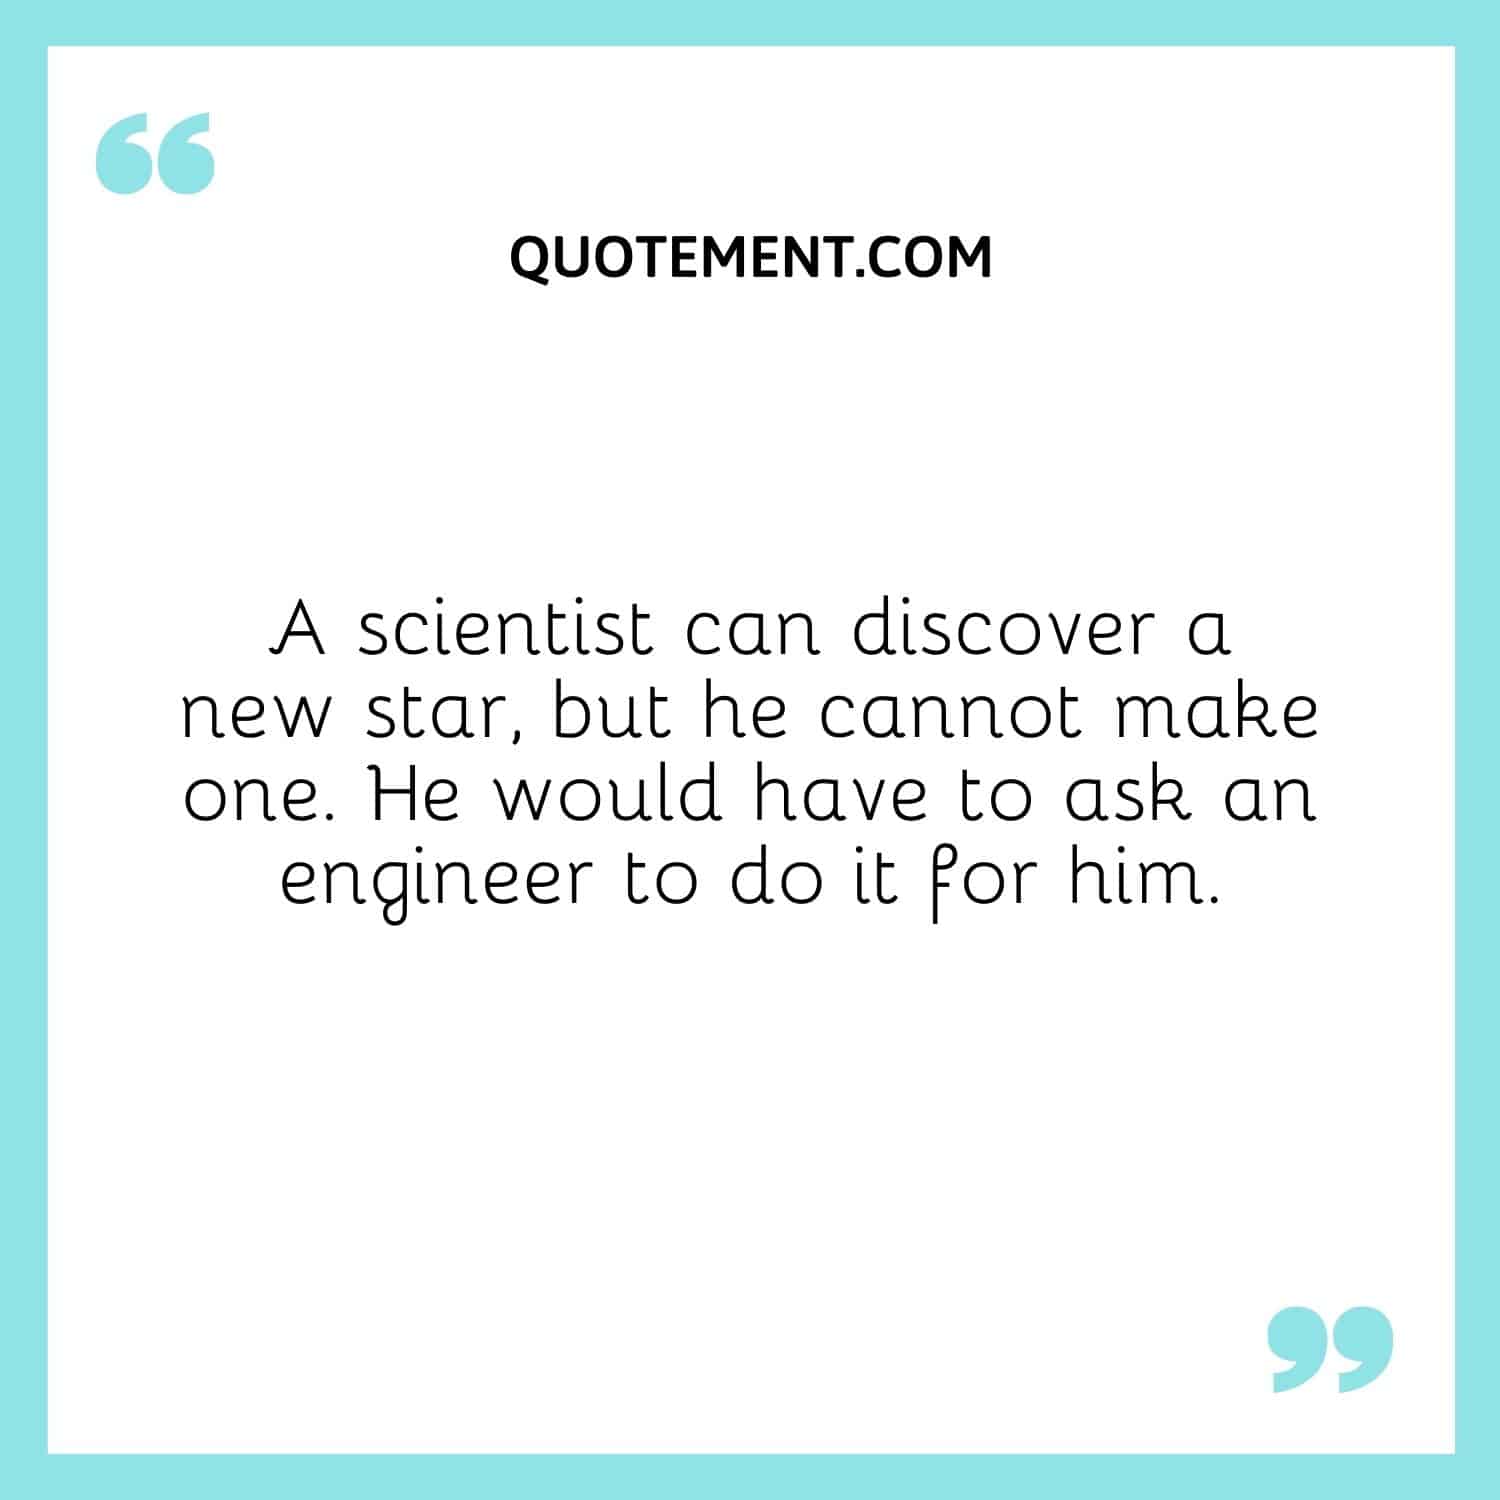 Un científico puede descubrir una nueva estrella, pero no puede fabricarla. Tendría que pedírselo a un ingeniero.